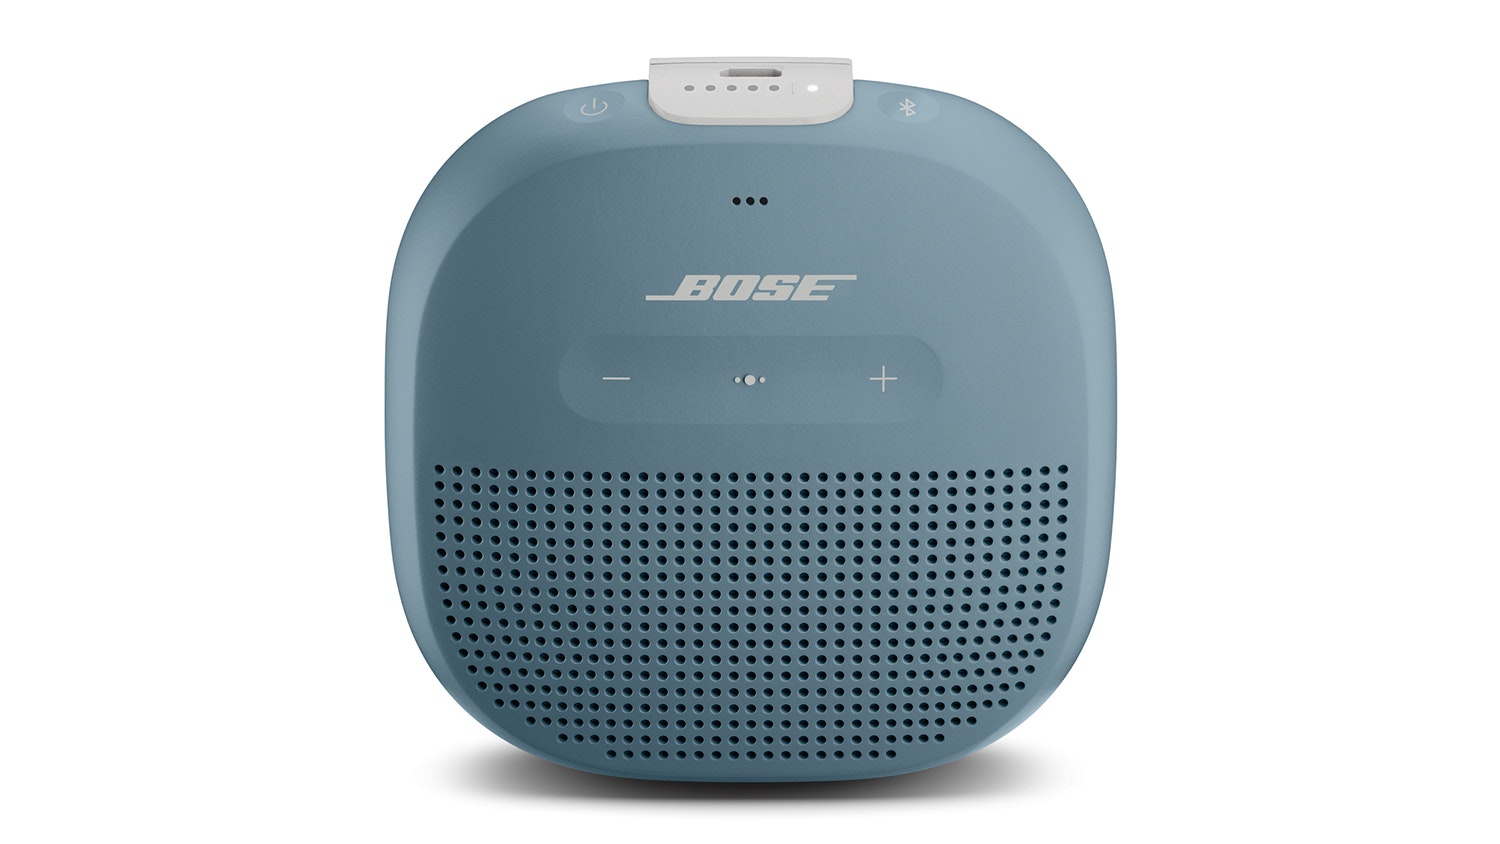 Micro縲�Portable縲�New縲�Blue縲�Bluetooth縲�Norman縲�Speaker縲�Harvey縲�Stone縲�Zealand縲�Bose縲�SoundLink